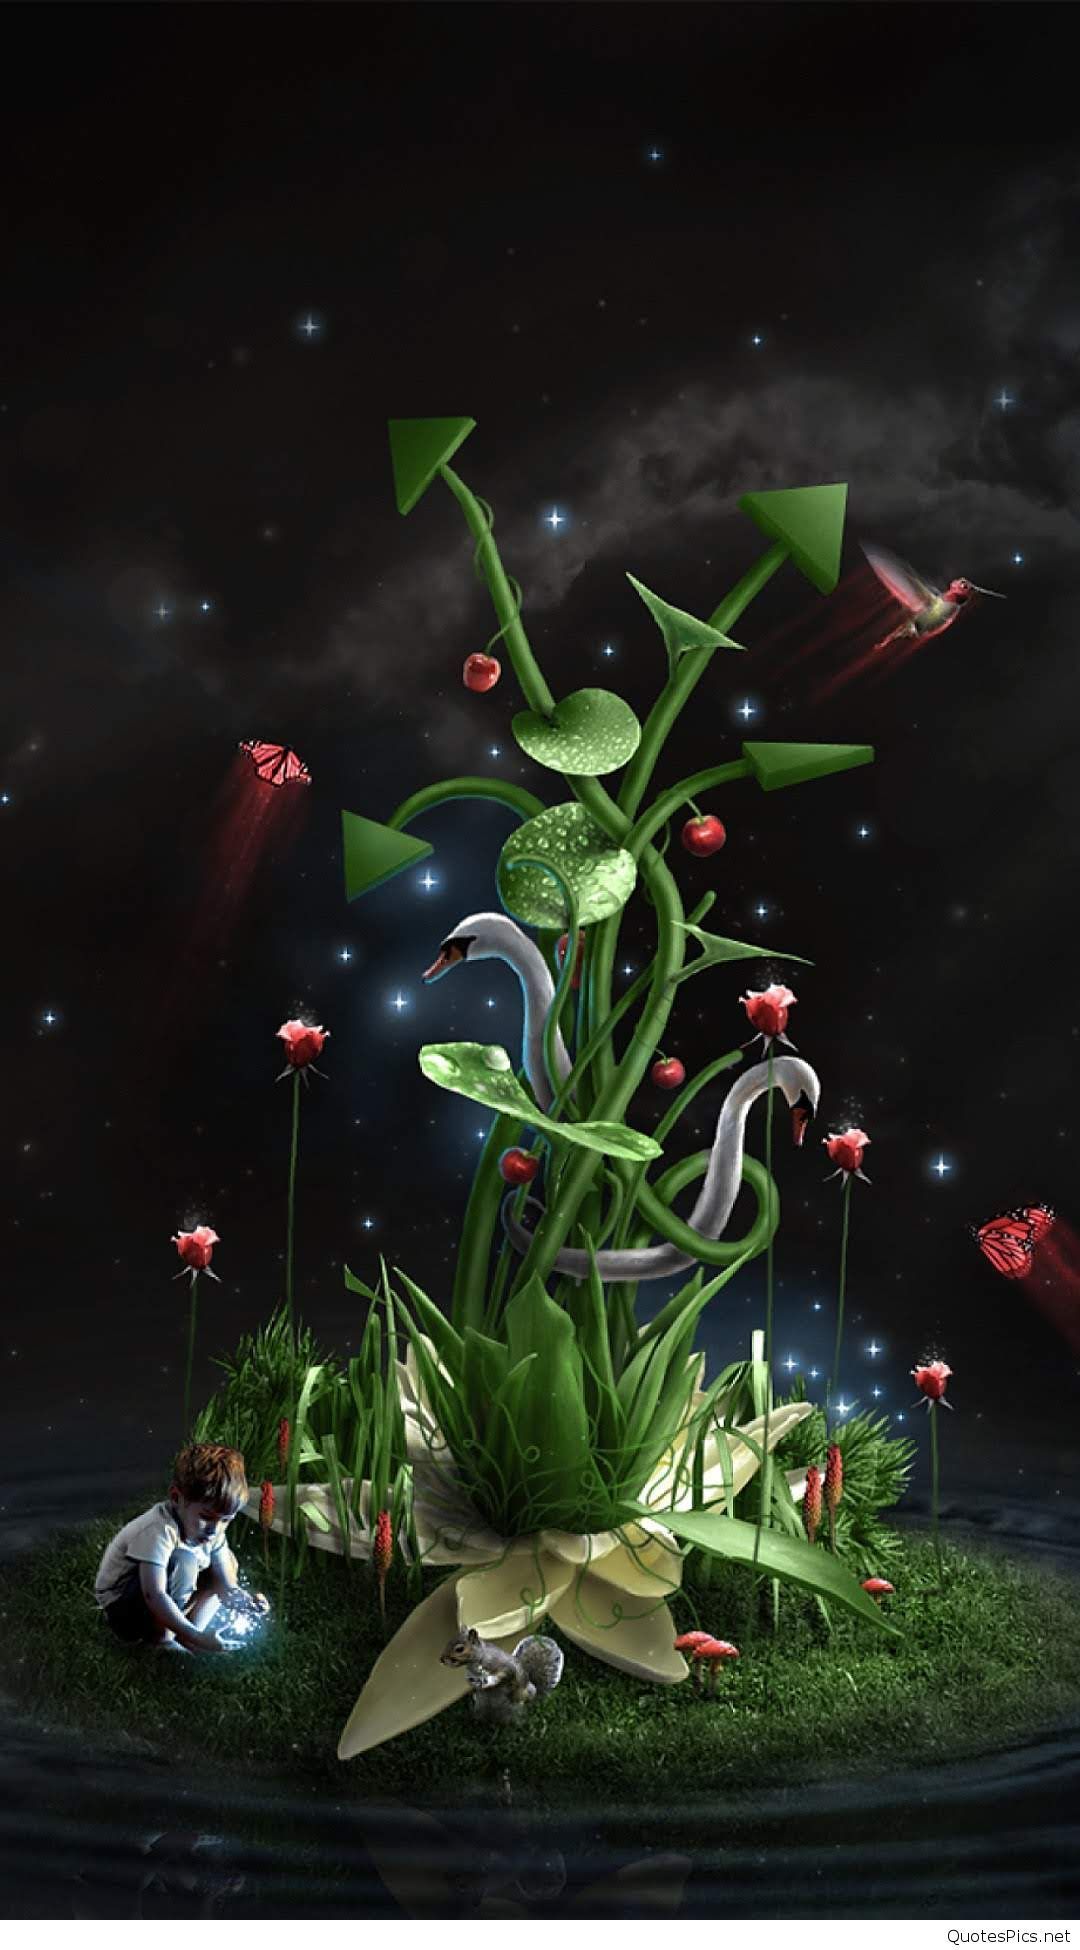 sfondi natura per cellulari android,pianta,fiore,fotografia di still life,natura morta,fotografia